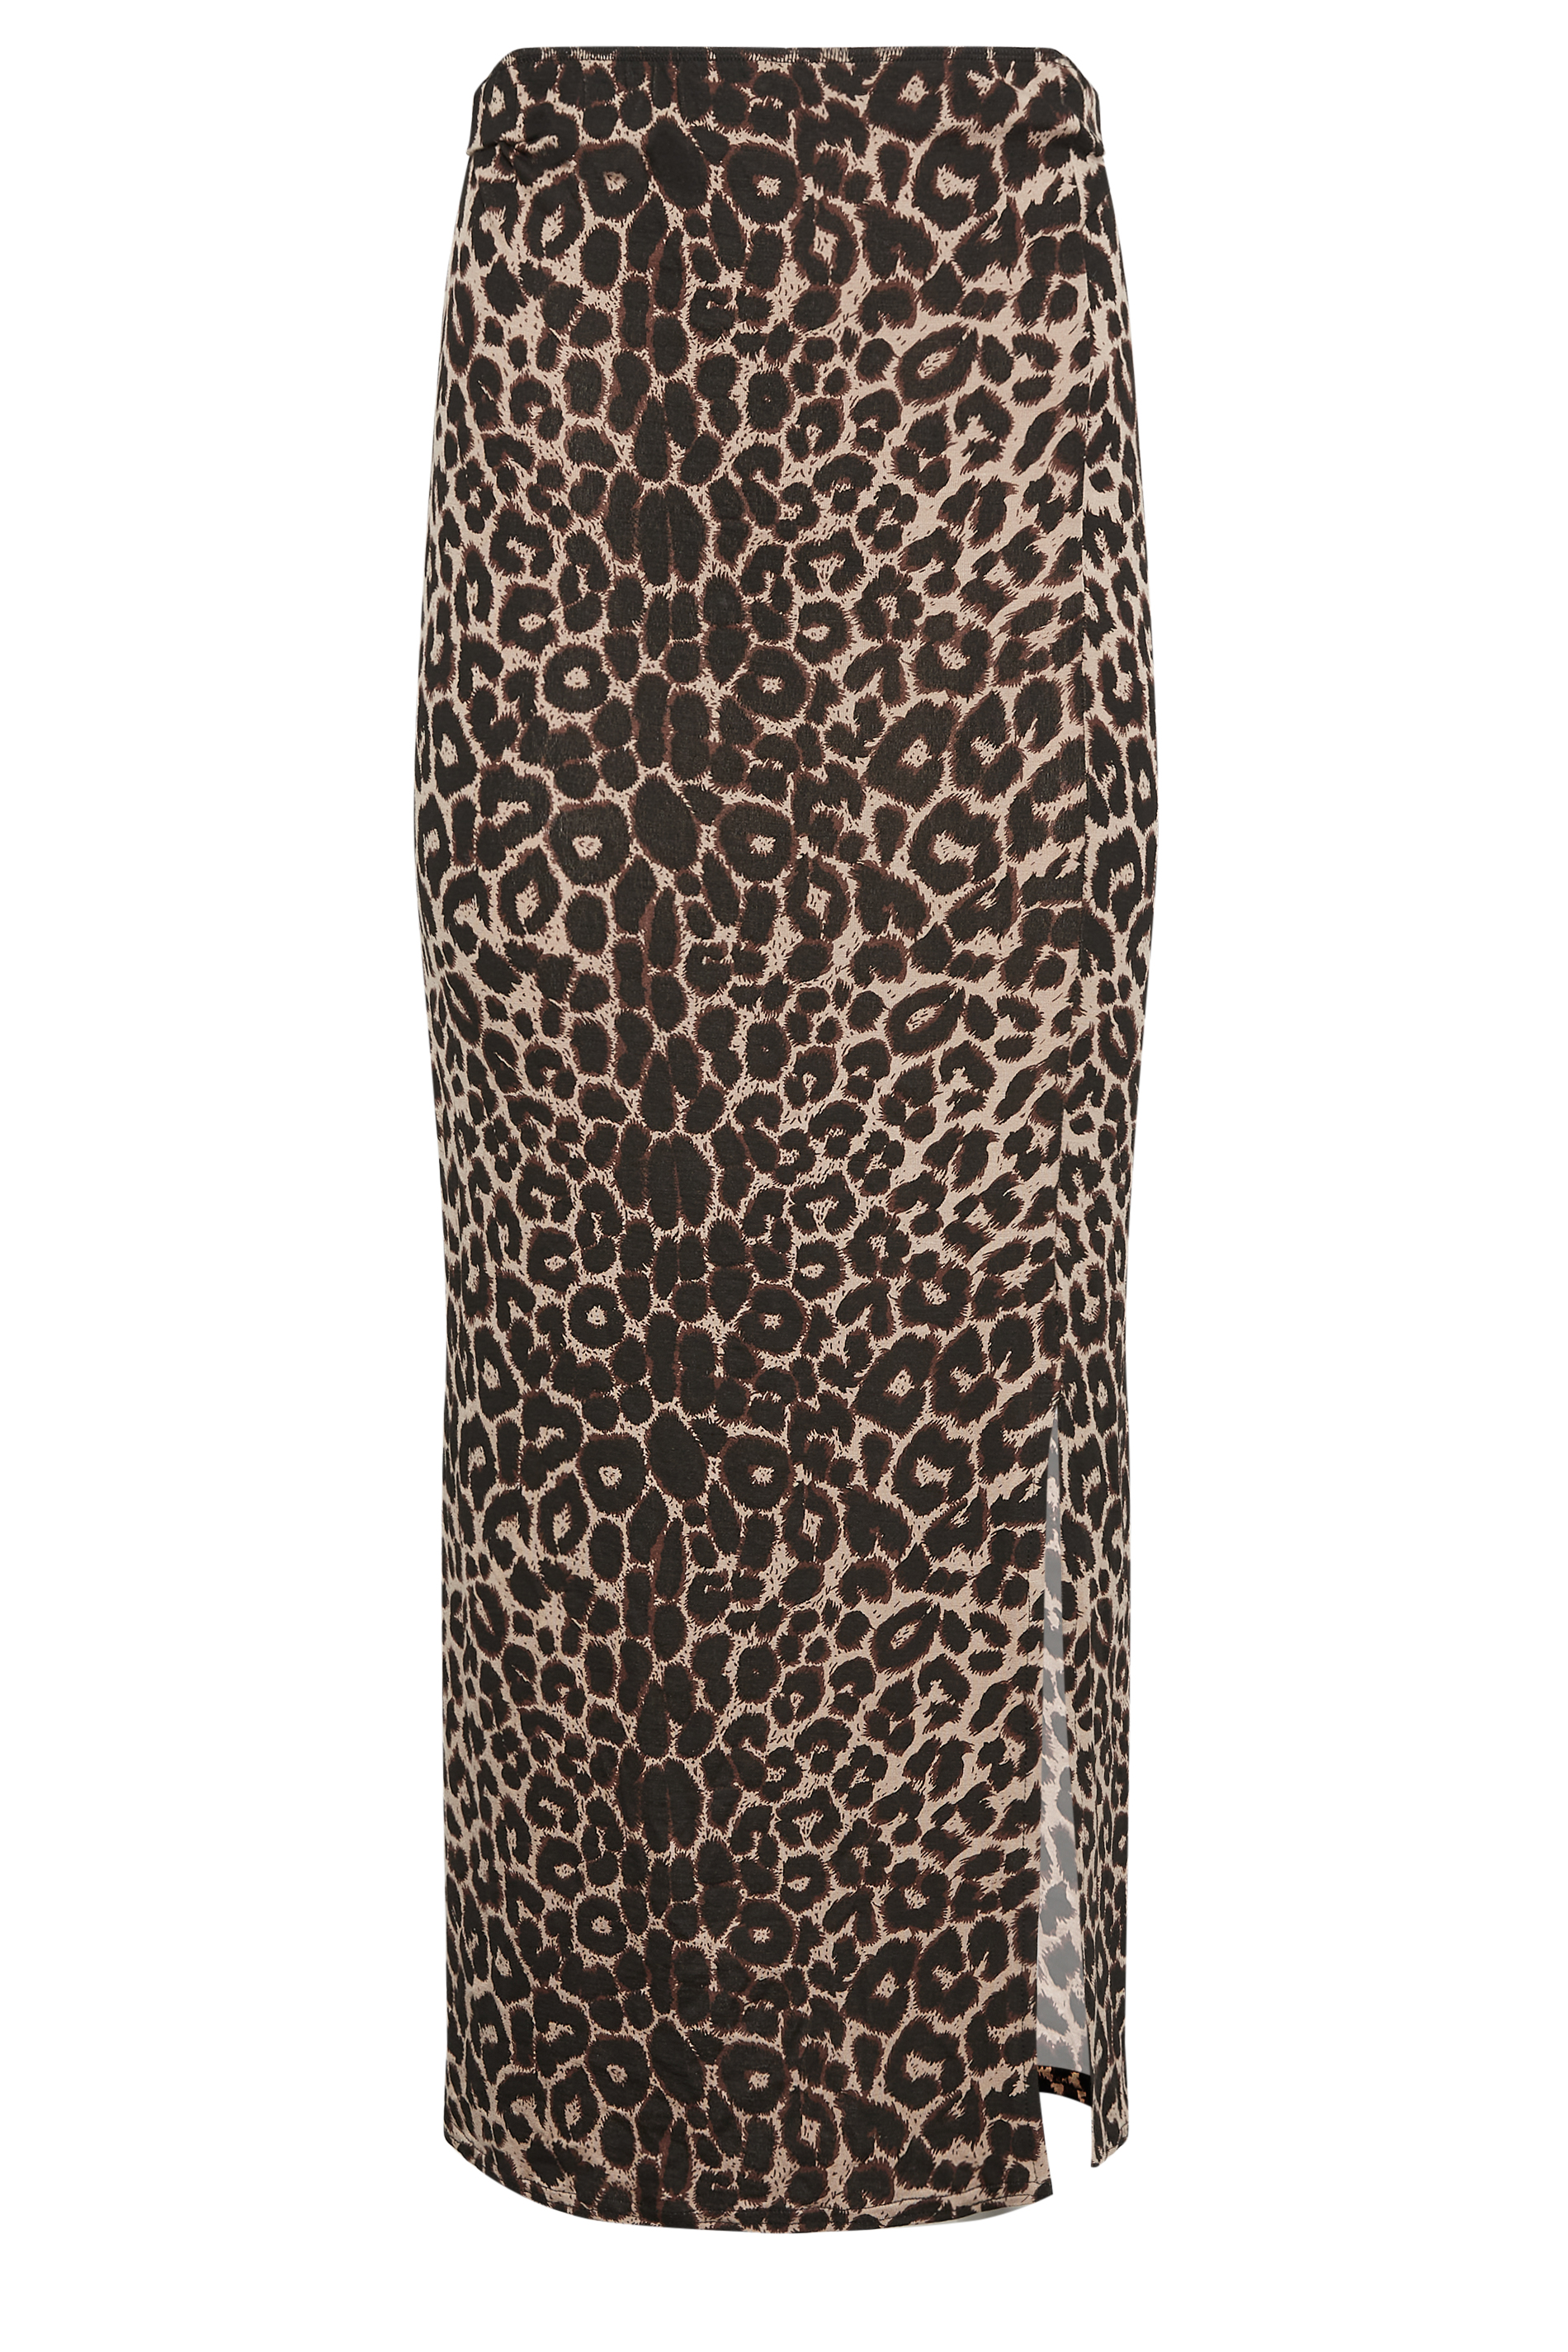 PixieGirl Brown Leopard Print Maxi Skirt | PixieGirl